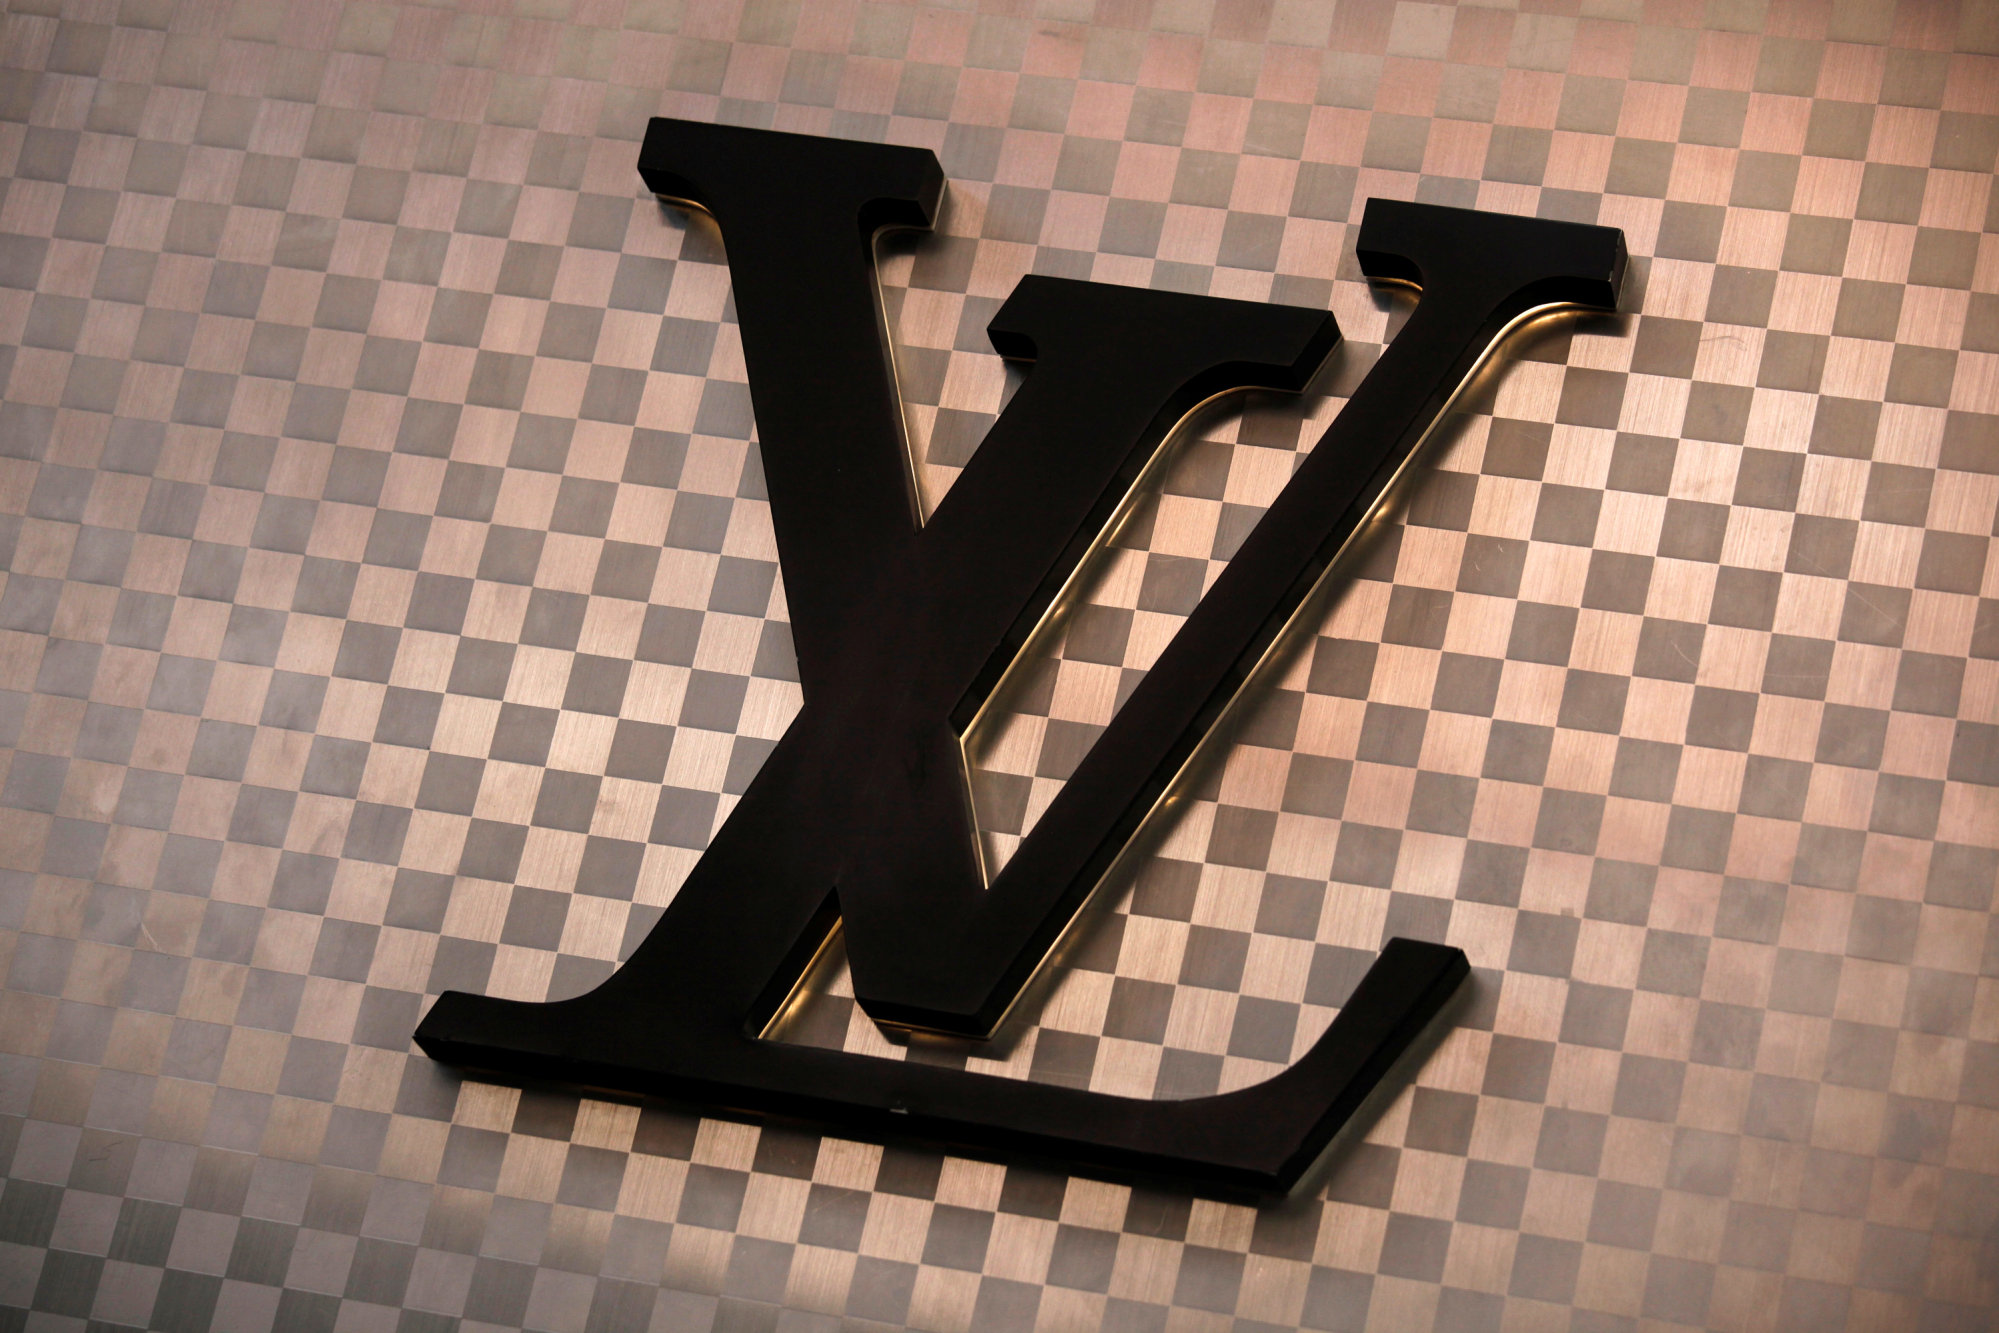 Louis Vuitton's Paris HQ Could Become LVMH's Next Hotel-Megastore